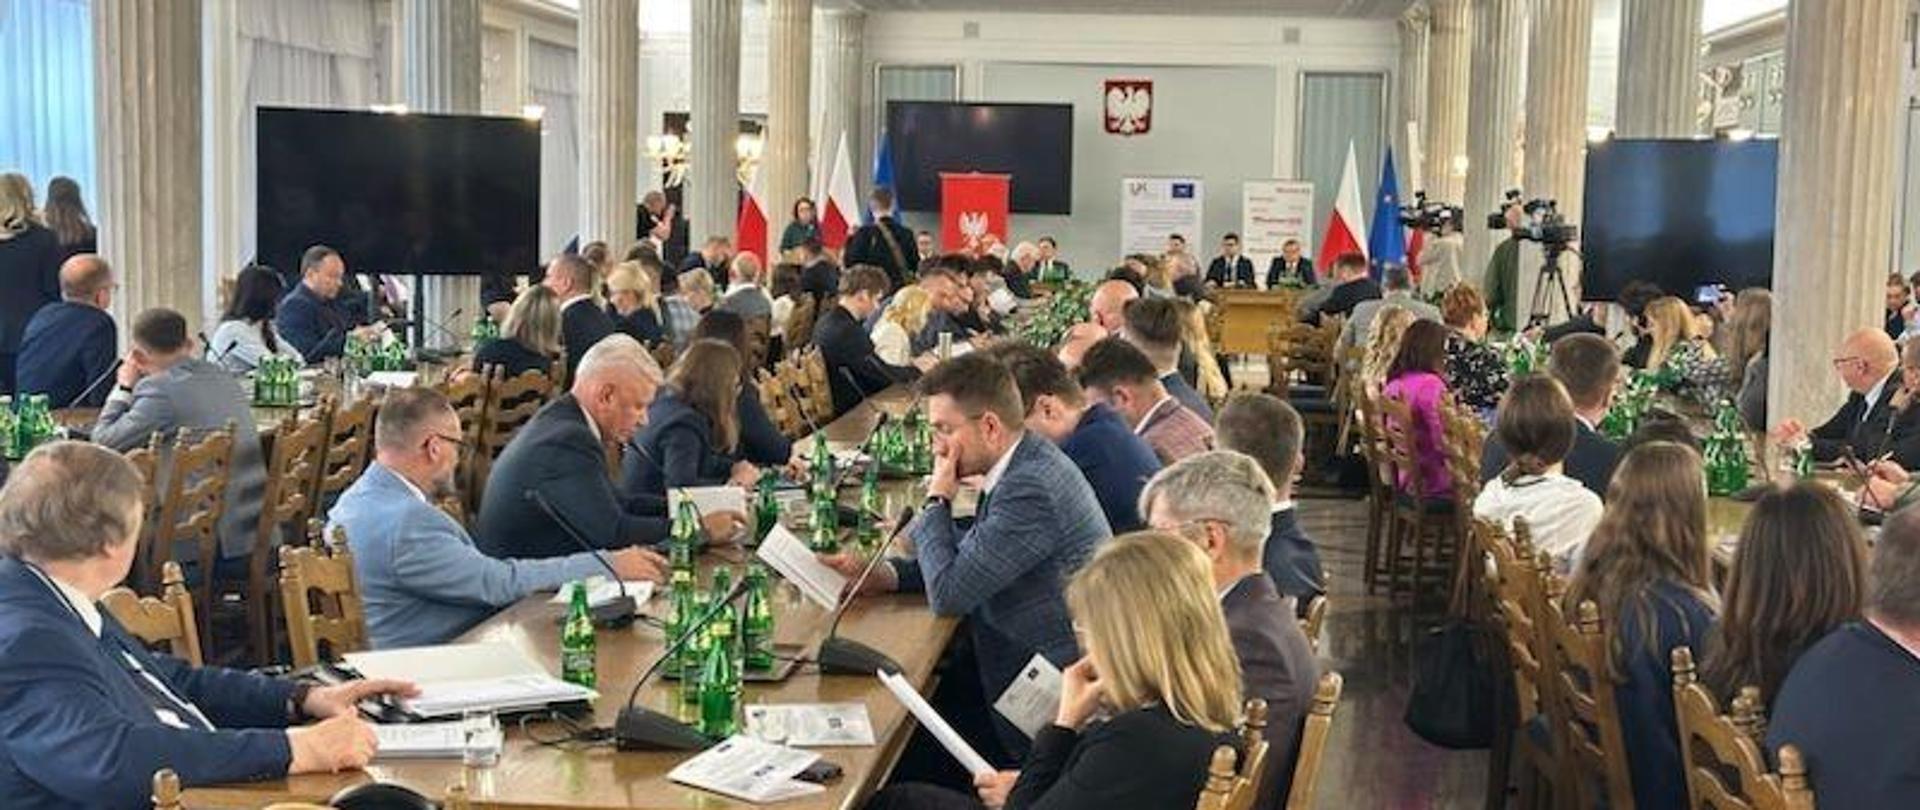 Konferencja w Sejmie poświęcona 75-leciu oddziaływania Rady Europy.